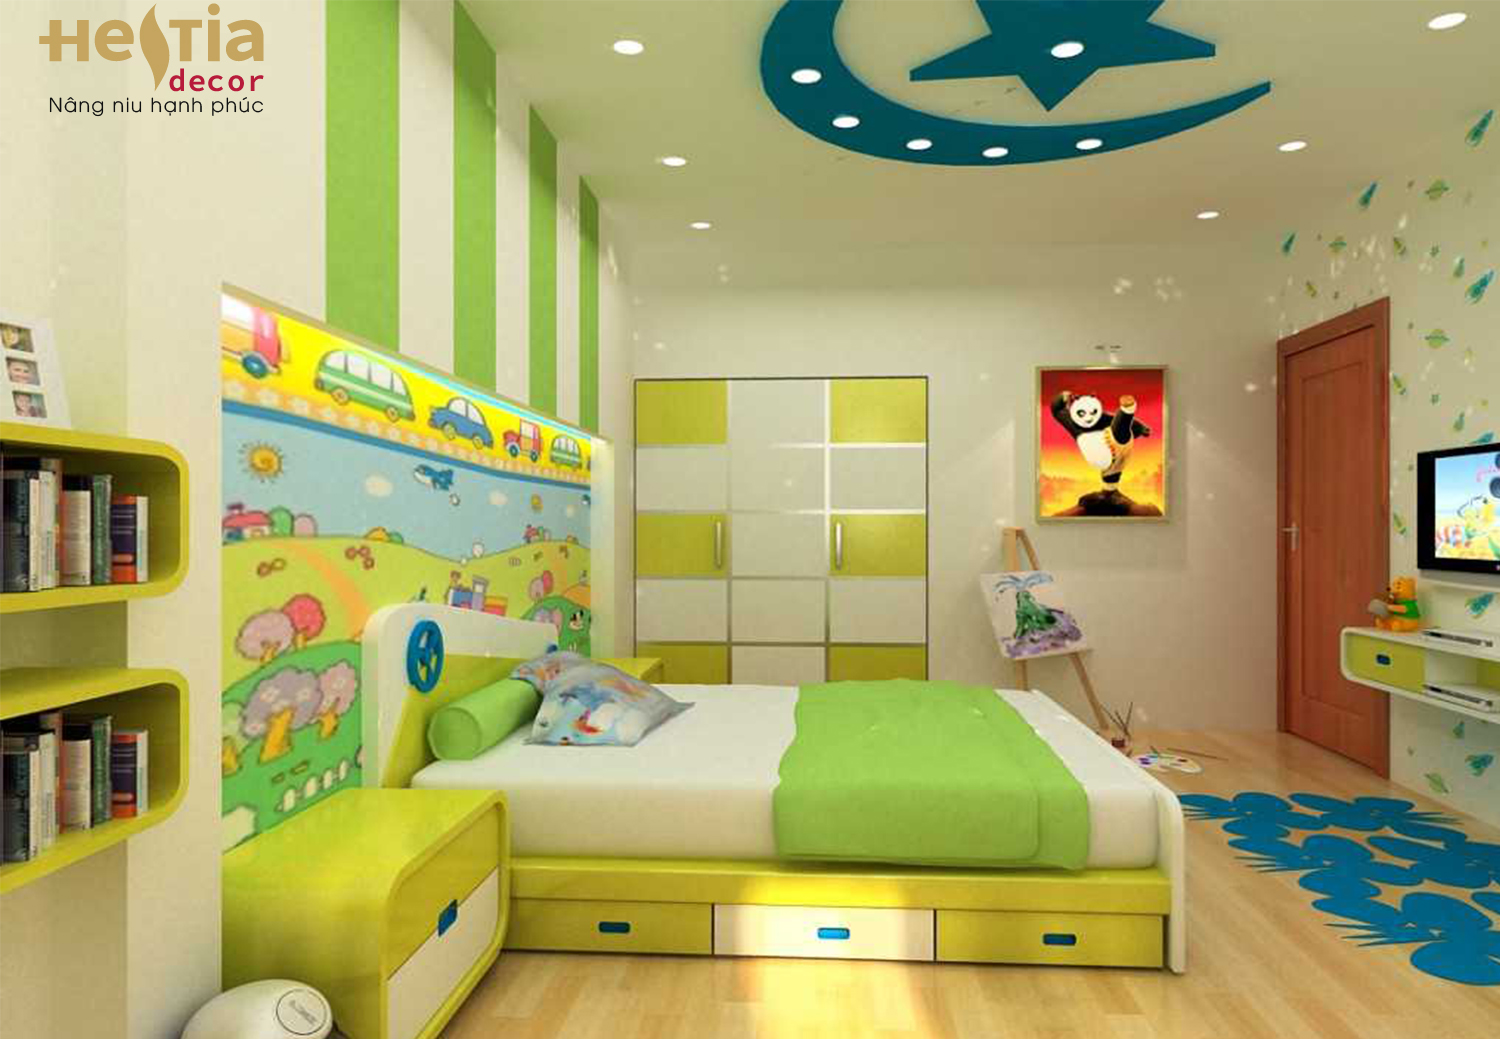 nội thất phòng ngủ trẻ em,nội thất Hestia Decor,phòng ngủ trẻ em